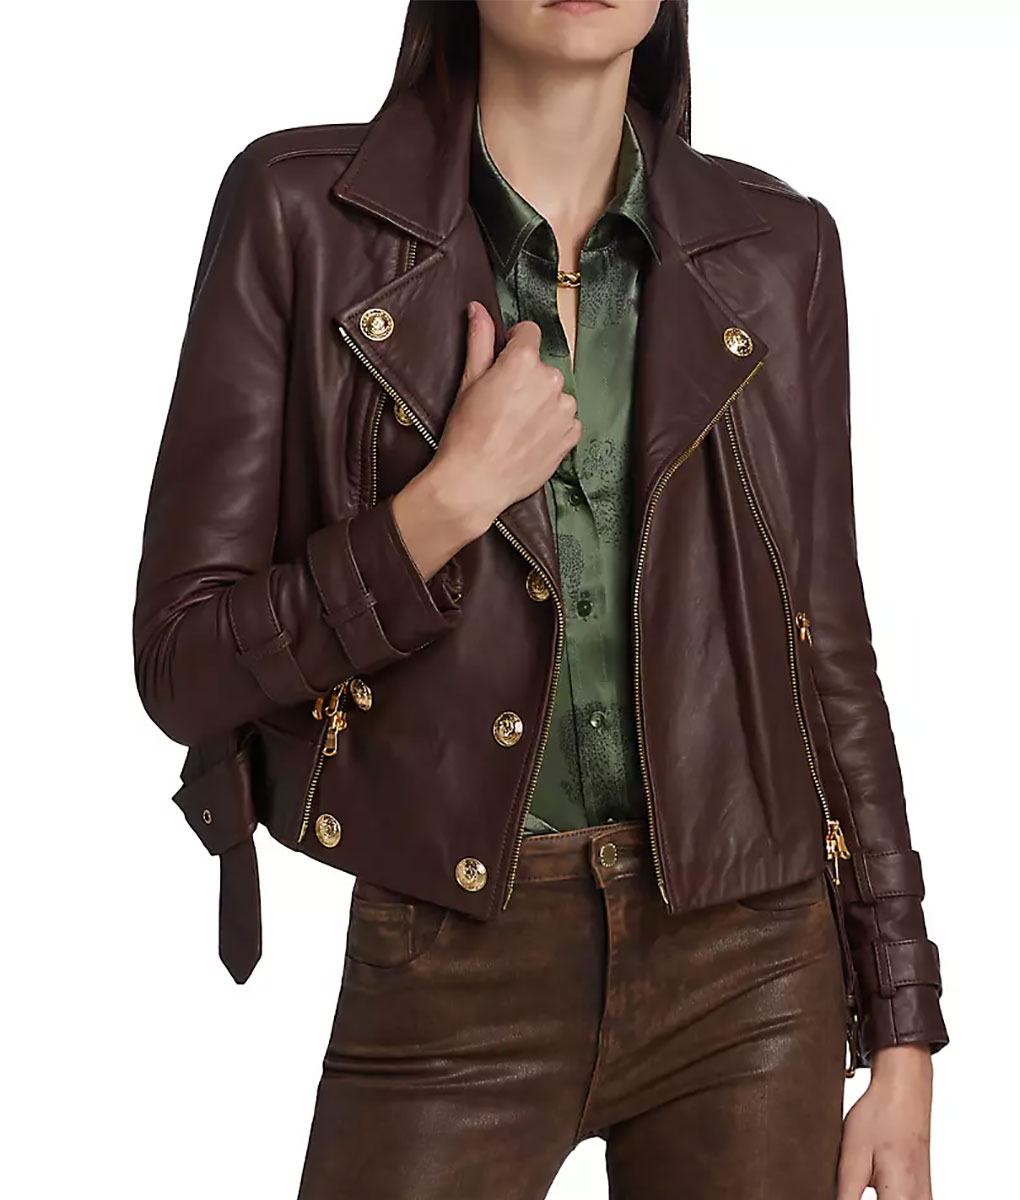 Kaitlin Olson Hacks Leather Jacket (3)